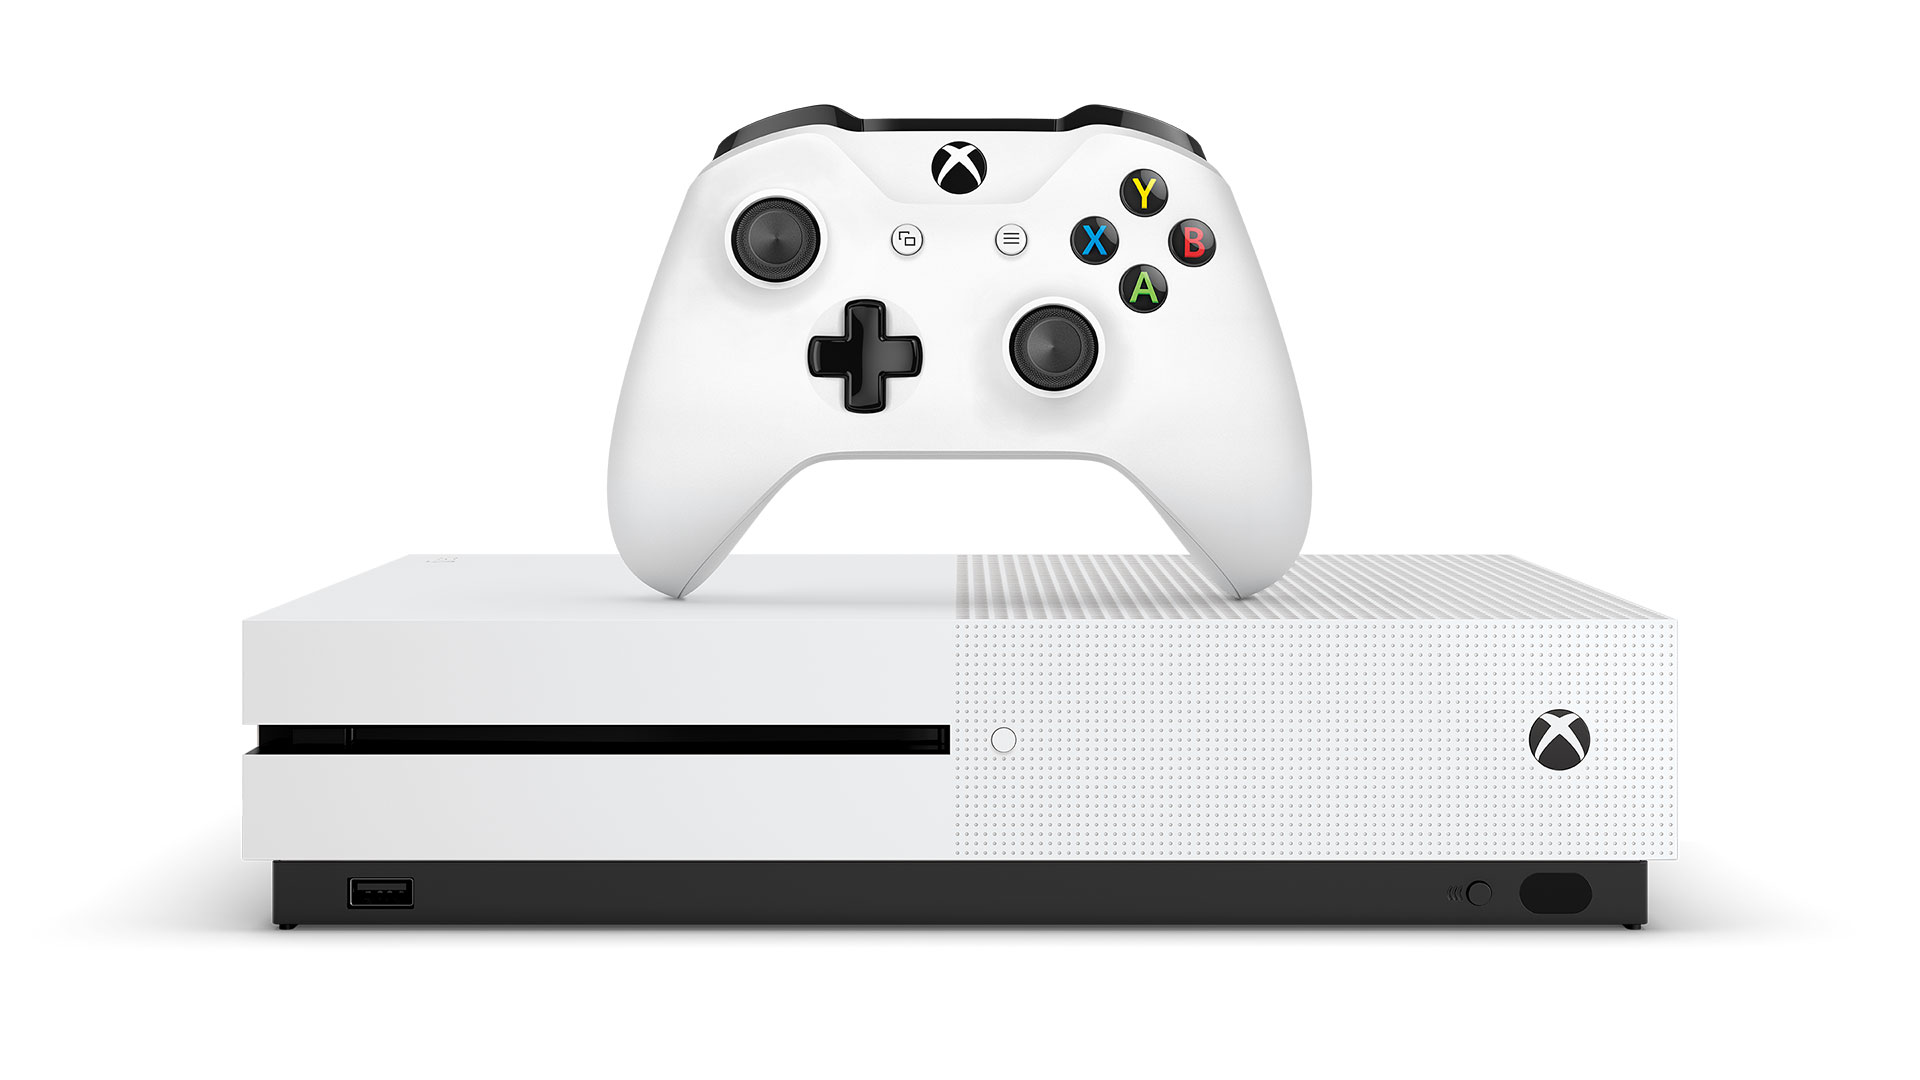 Le prix de la Xbox One de Microsoft est en moyenne inférieure à la Playstation 4